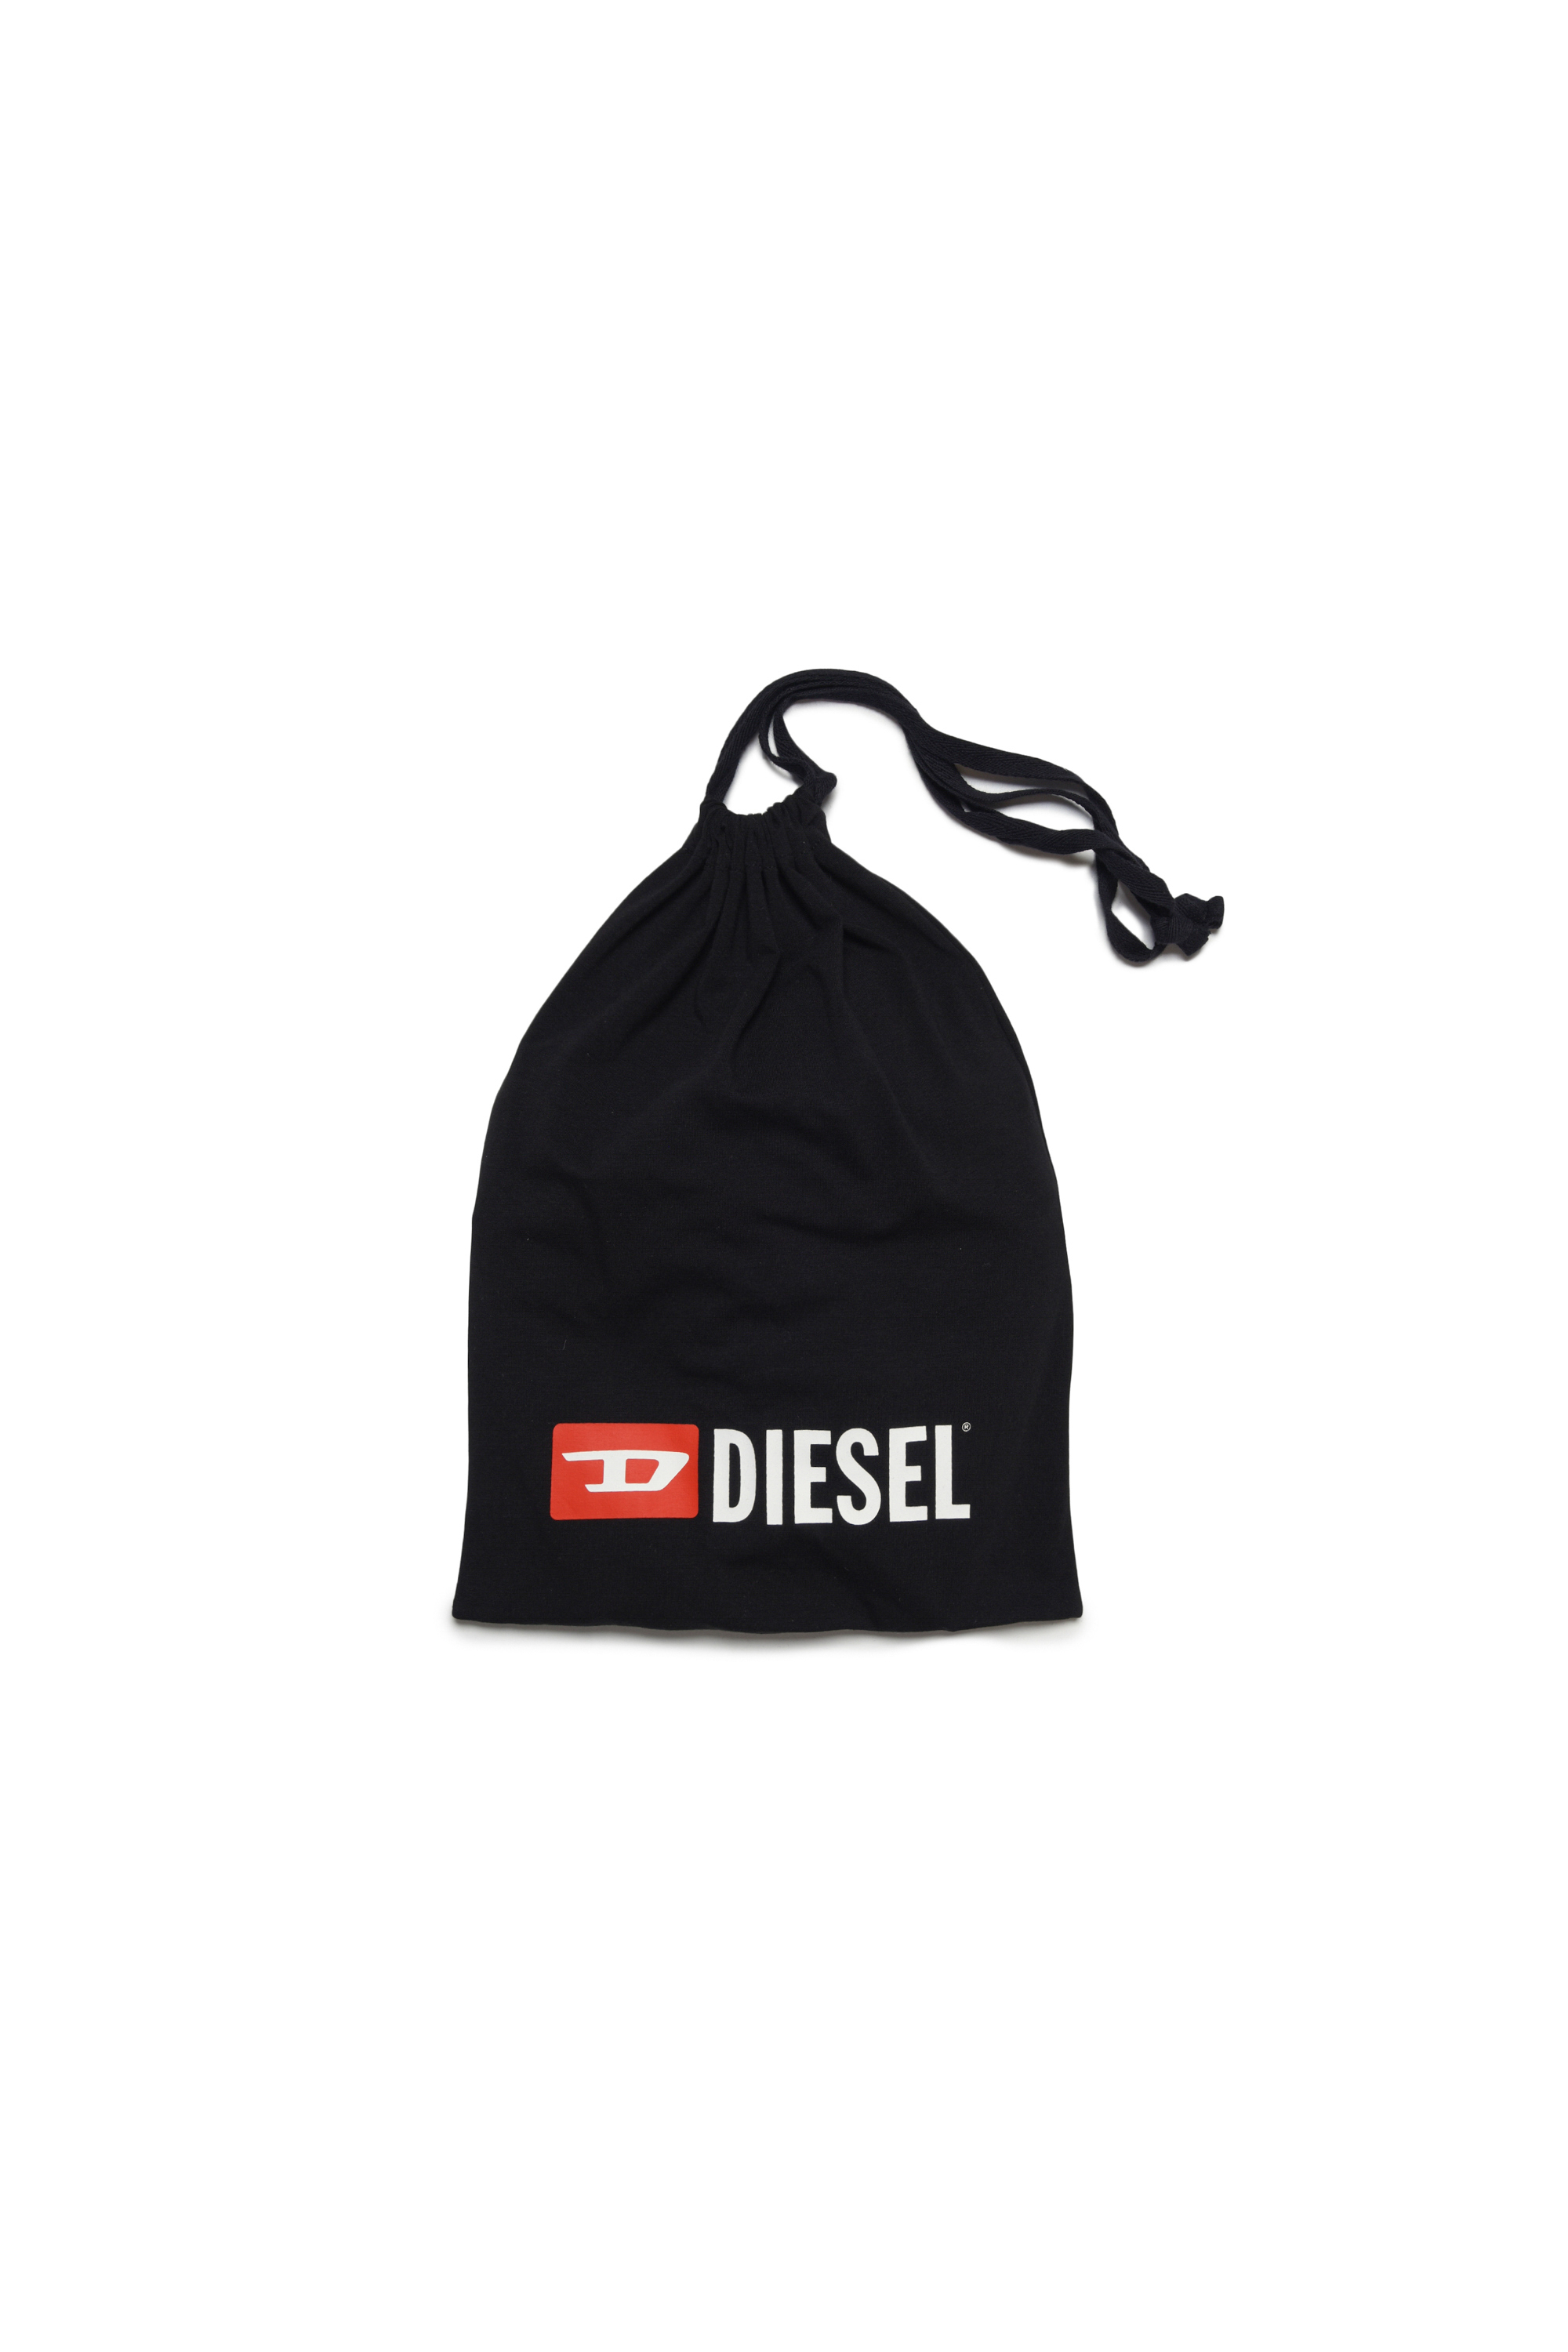 Diesel - UNPELIO, Black - Image 4